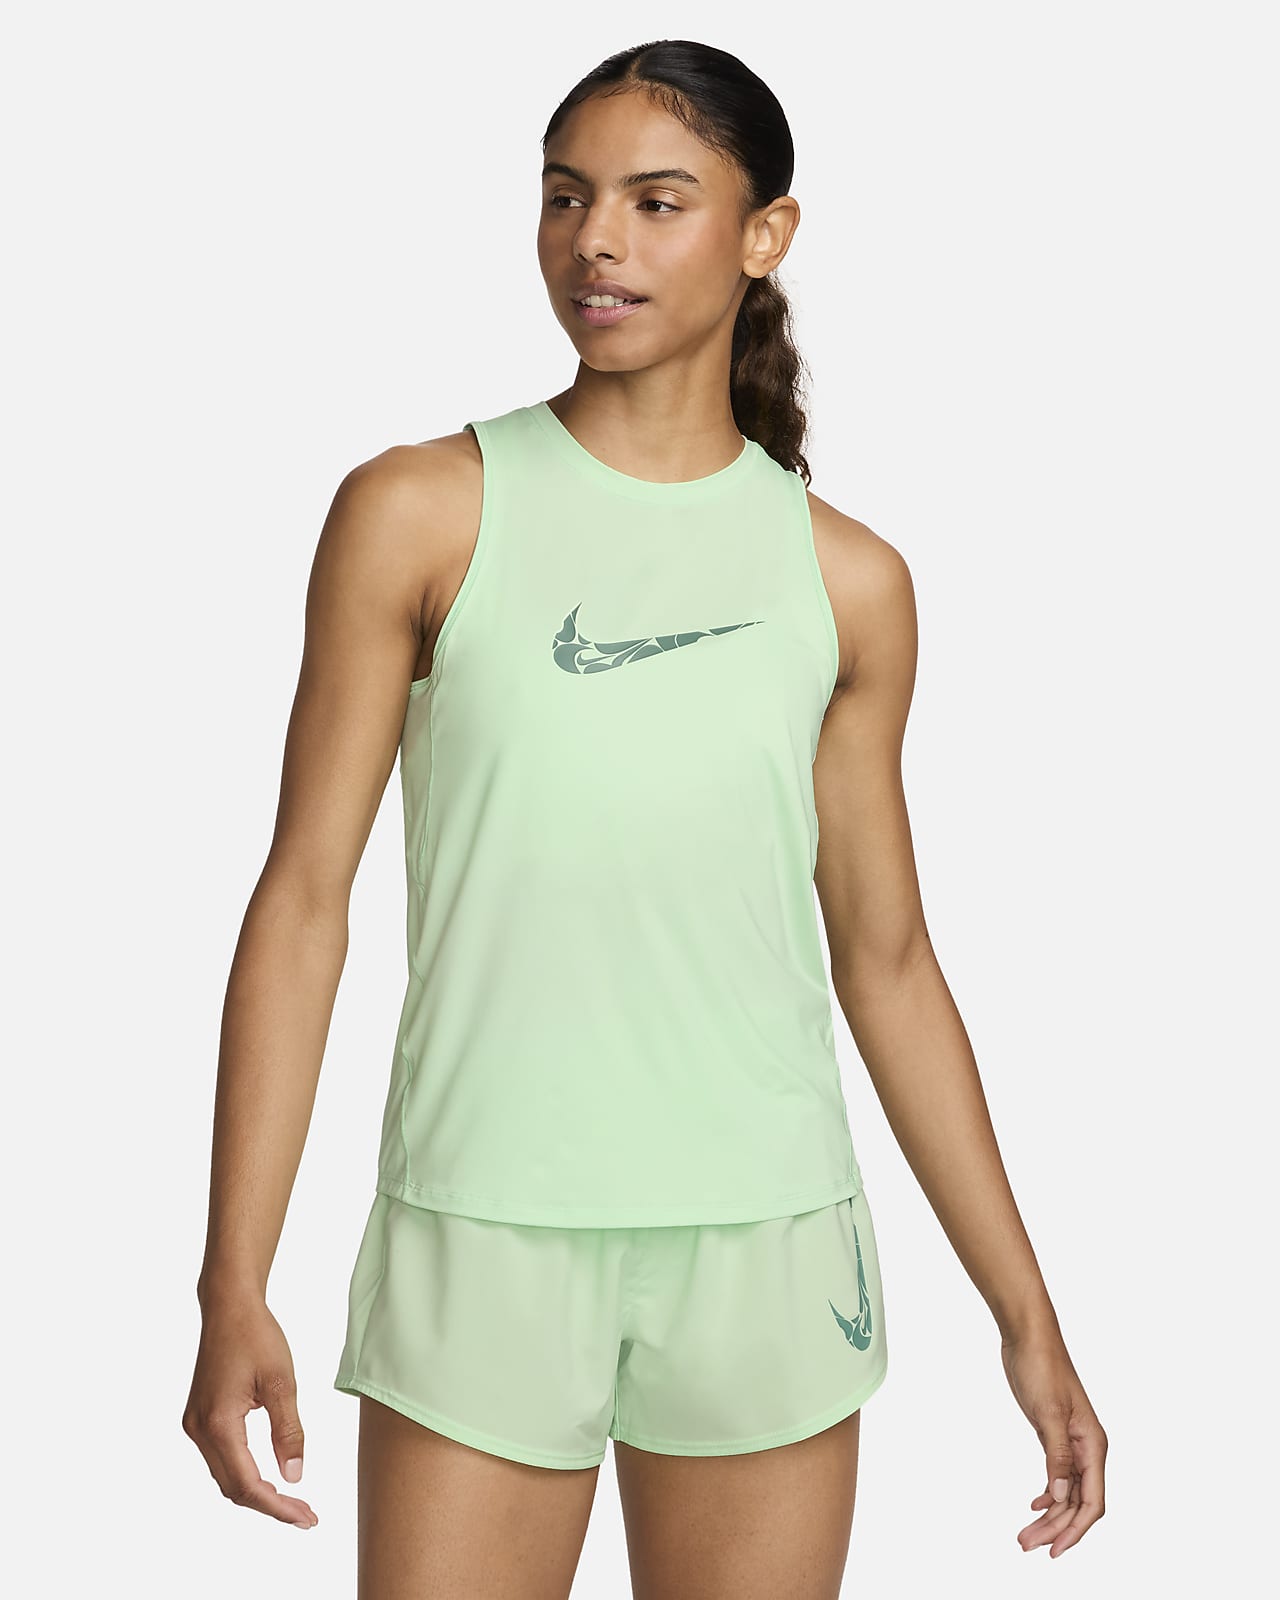 Nike One løpesinglet med grafikk til dame